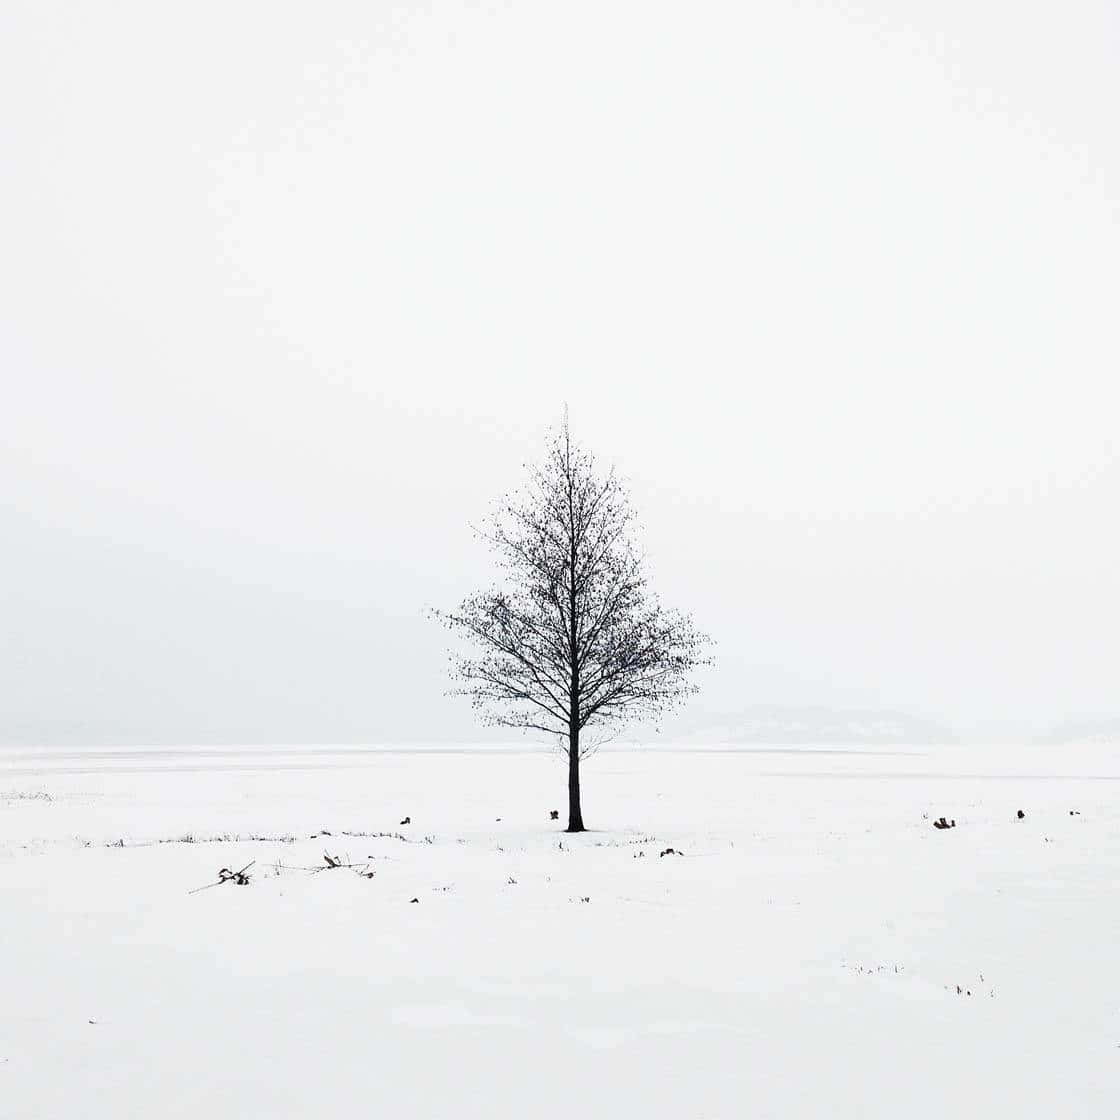 Minimalistträd I Snö Bilder.